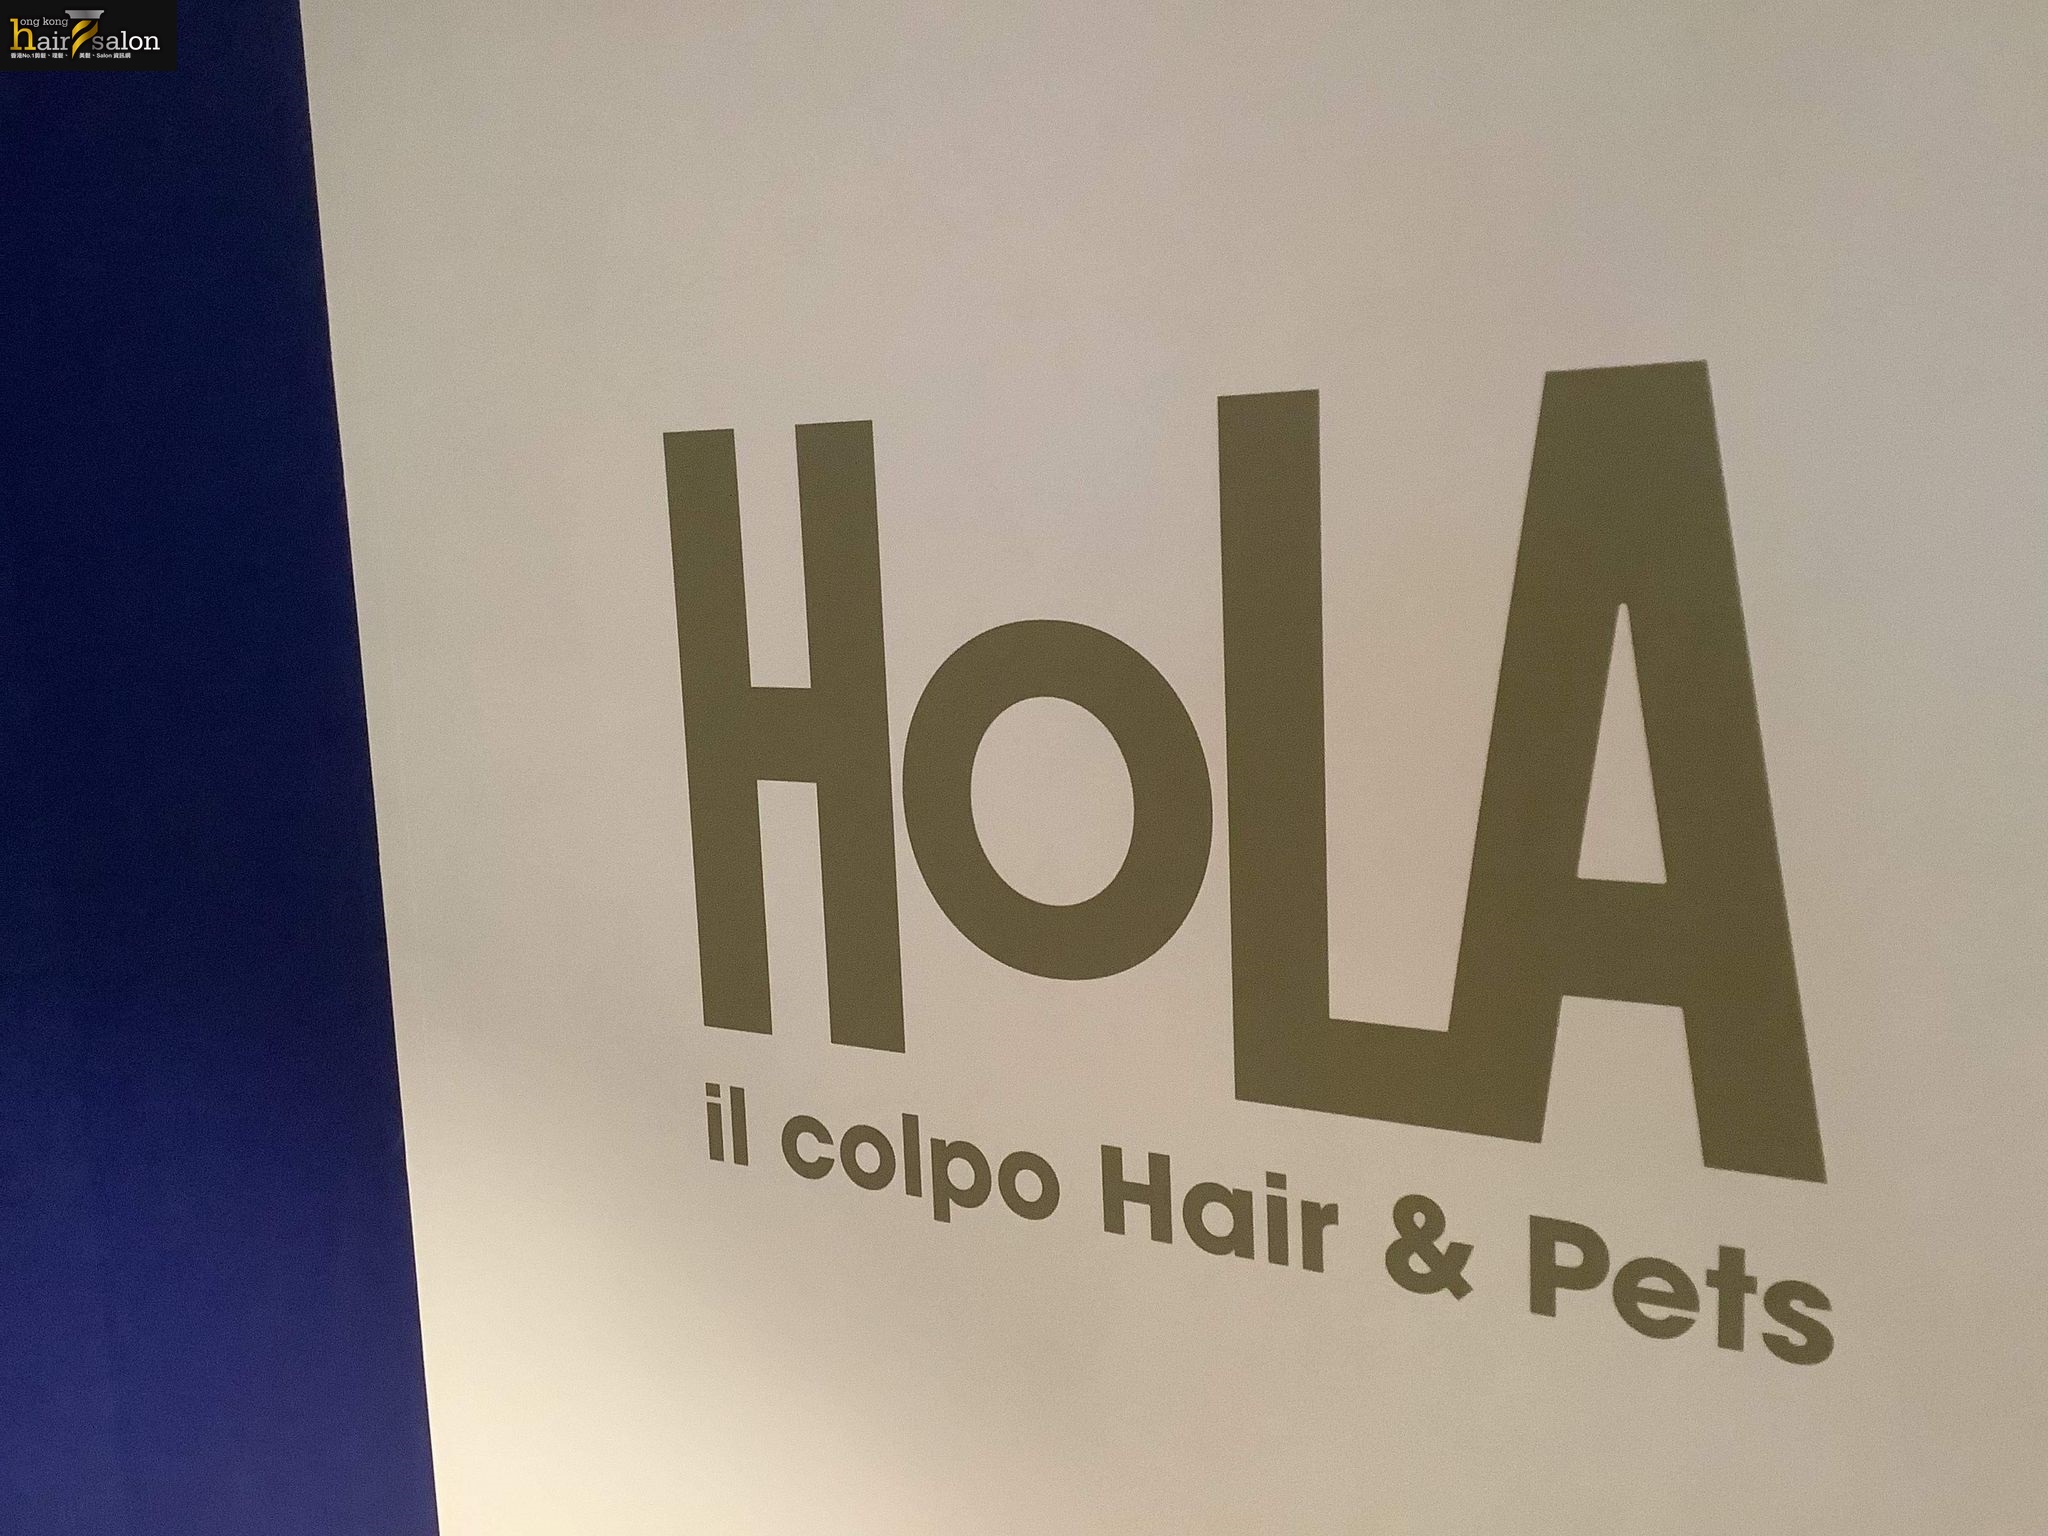 髮型屋: Hola il Colpo hairs & pets